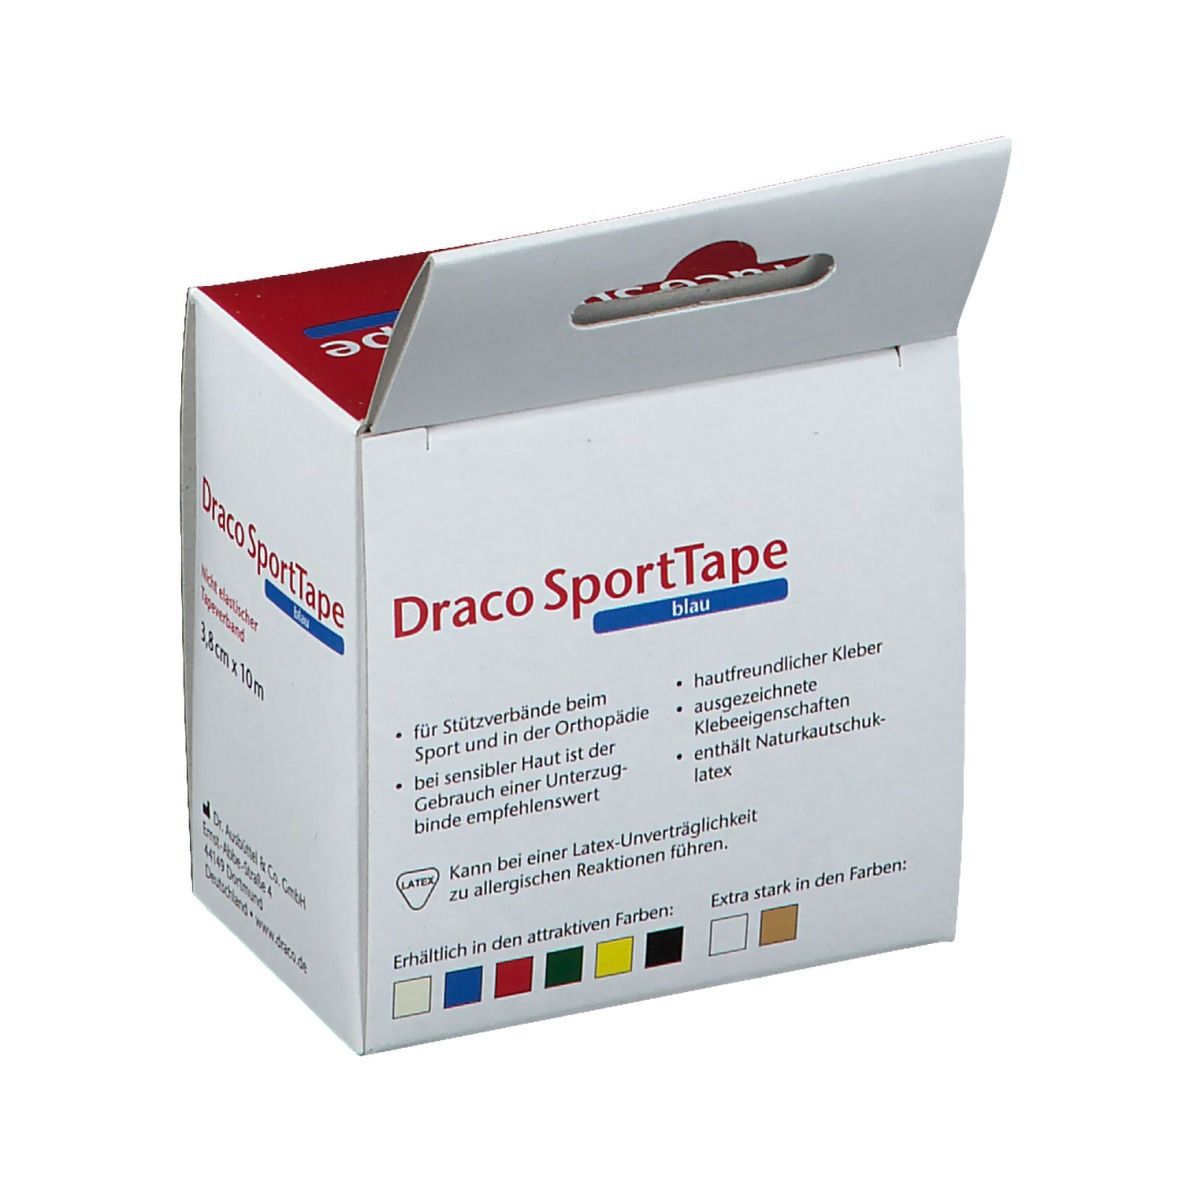 Draco SportTape 3,8 cm x 10 m blau